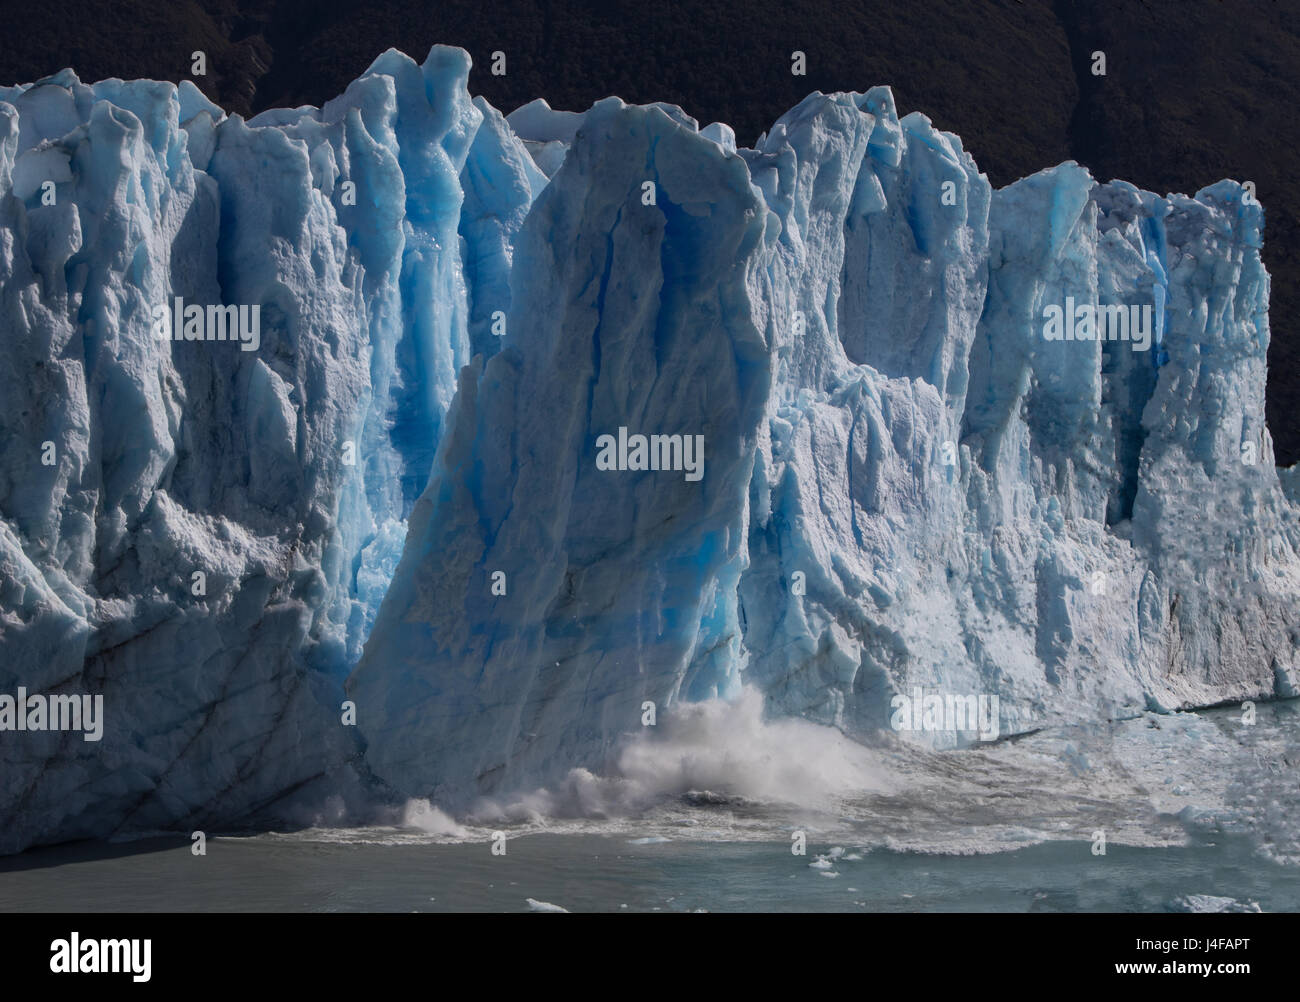 Calfing of Perito Moreno Glacier, Perito Moreno National Park, Argentina Stock Photo